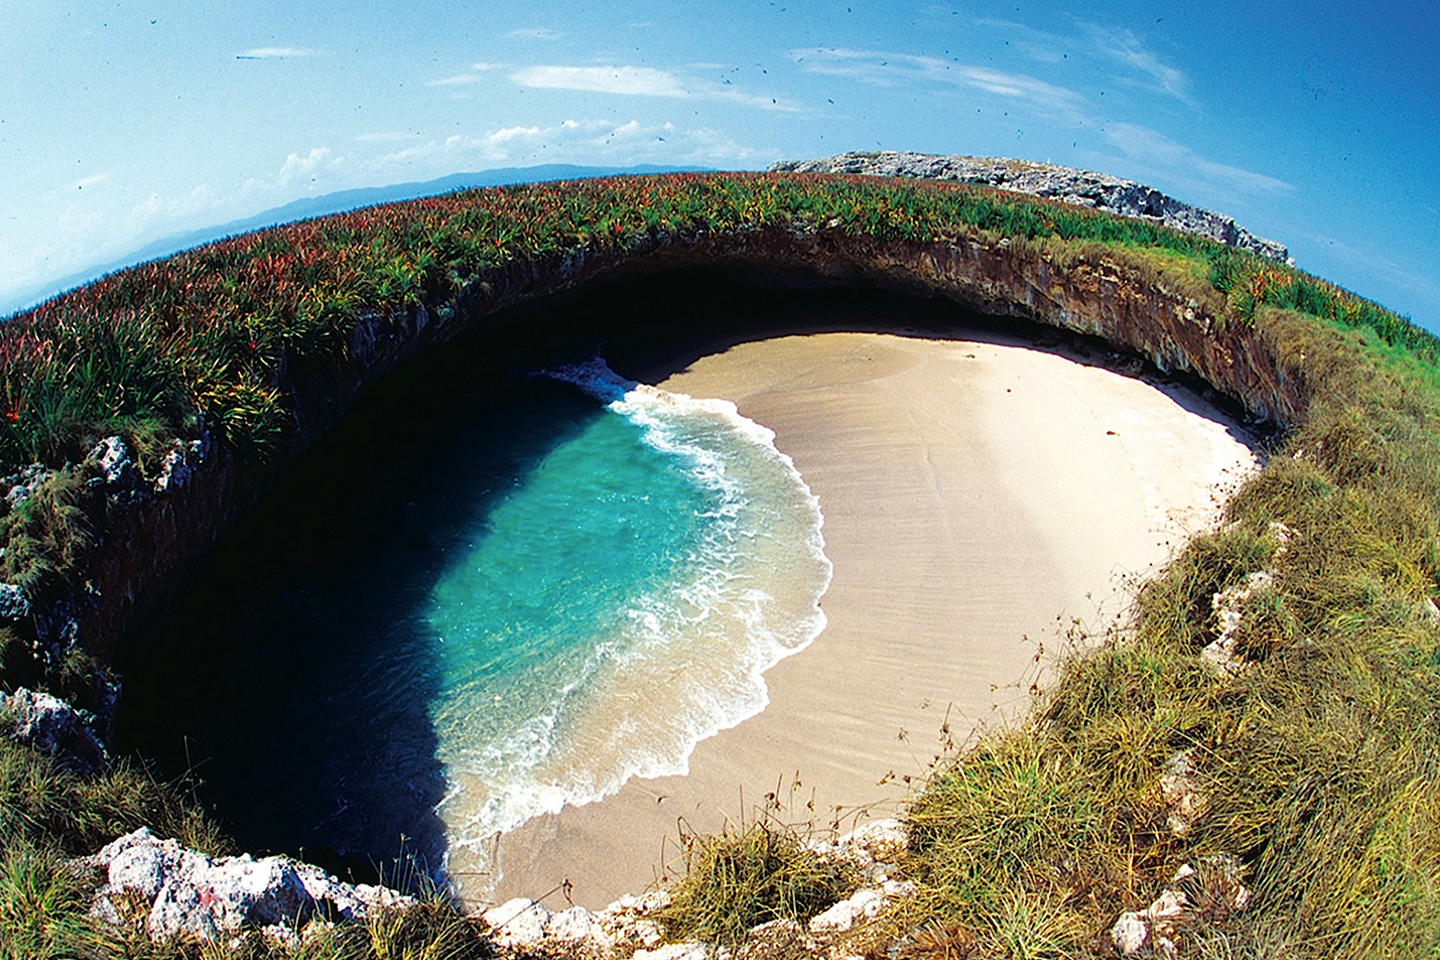 Enamórate de la Playa Escondida de Nayarit, la playa oculta más famosa de México